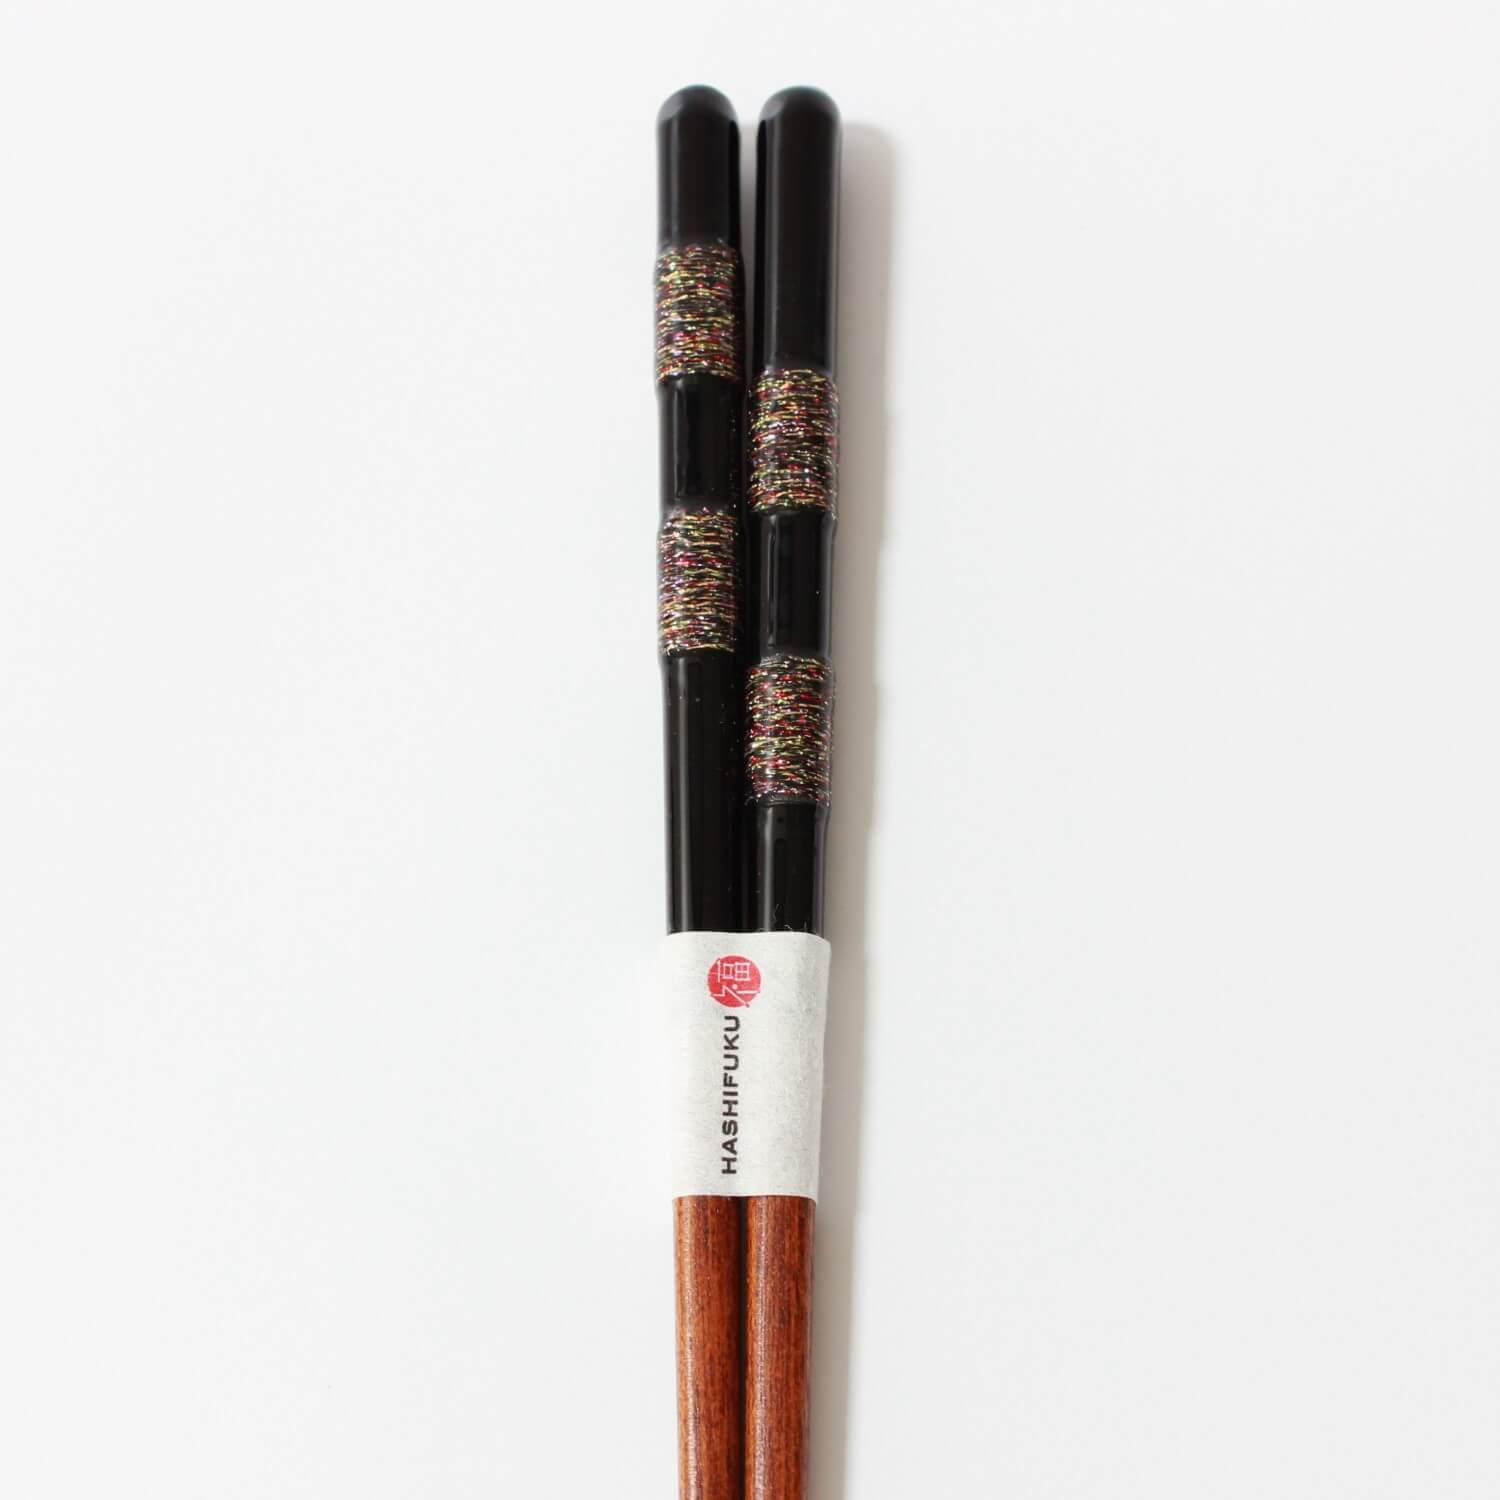 close up of handles of hananoito chopsticks